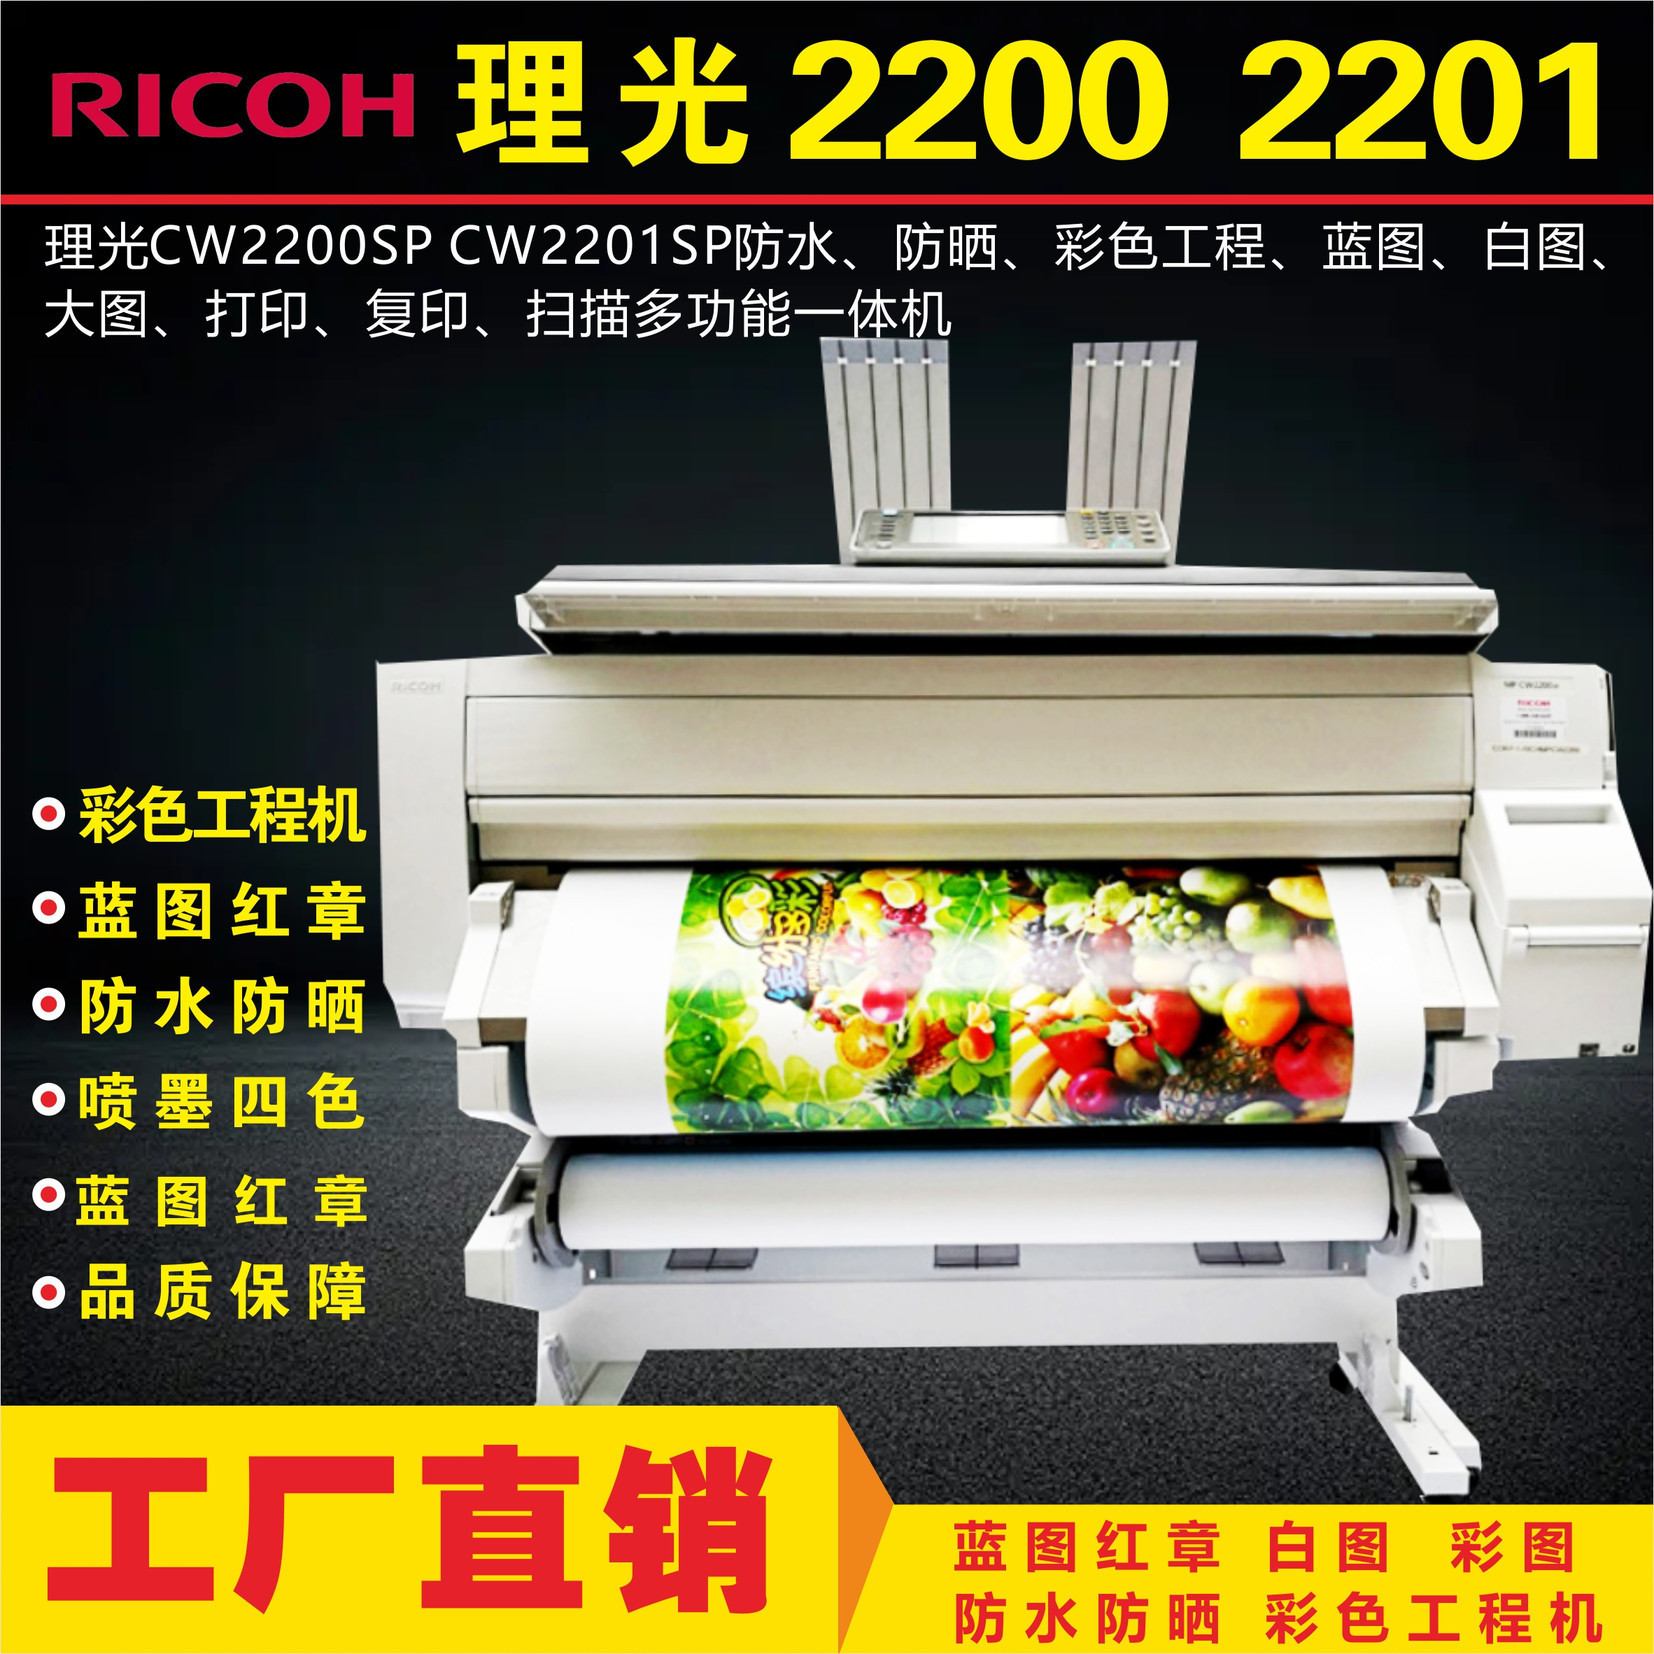 理光2201 2200 彩色蓝图红章工程图纸打印机打印复印扫描一体机